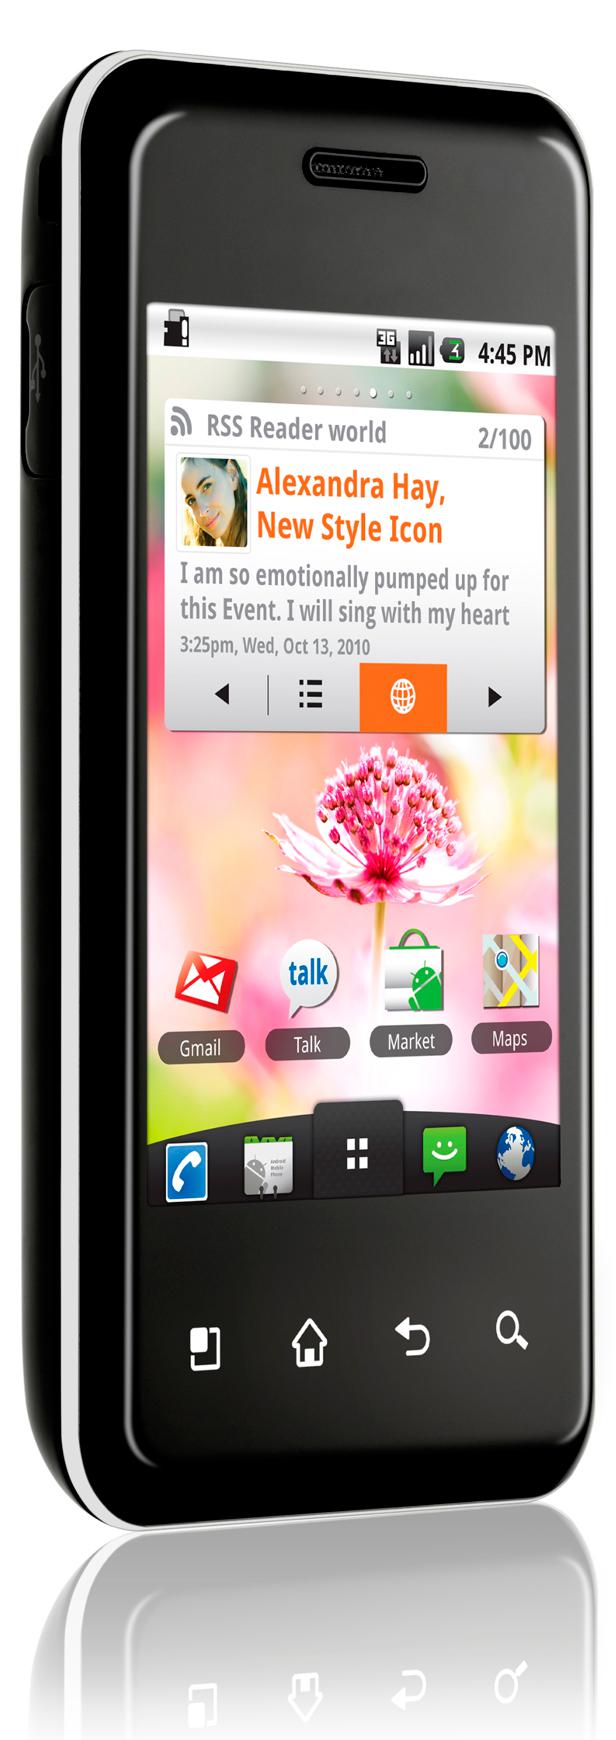 Nouveau smartphone Android LG Optimus Chic en photo